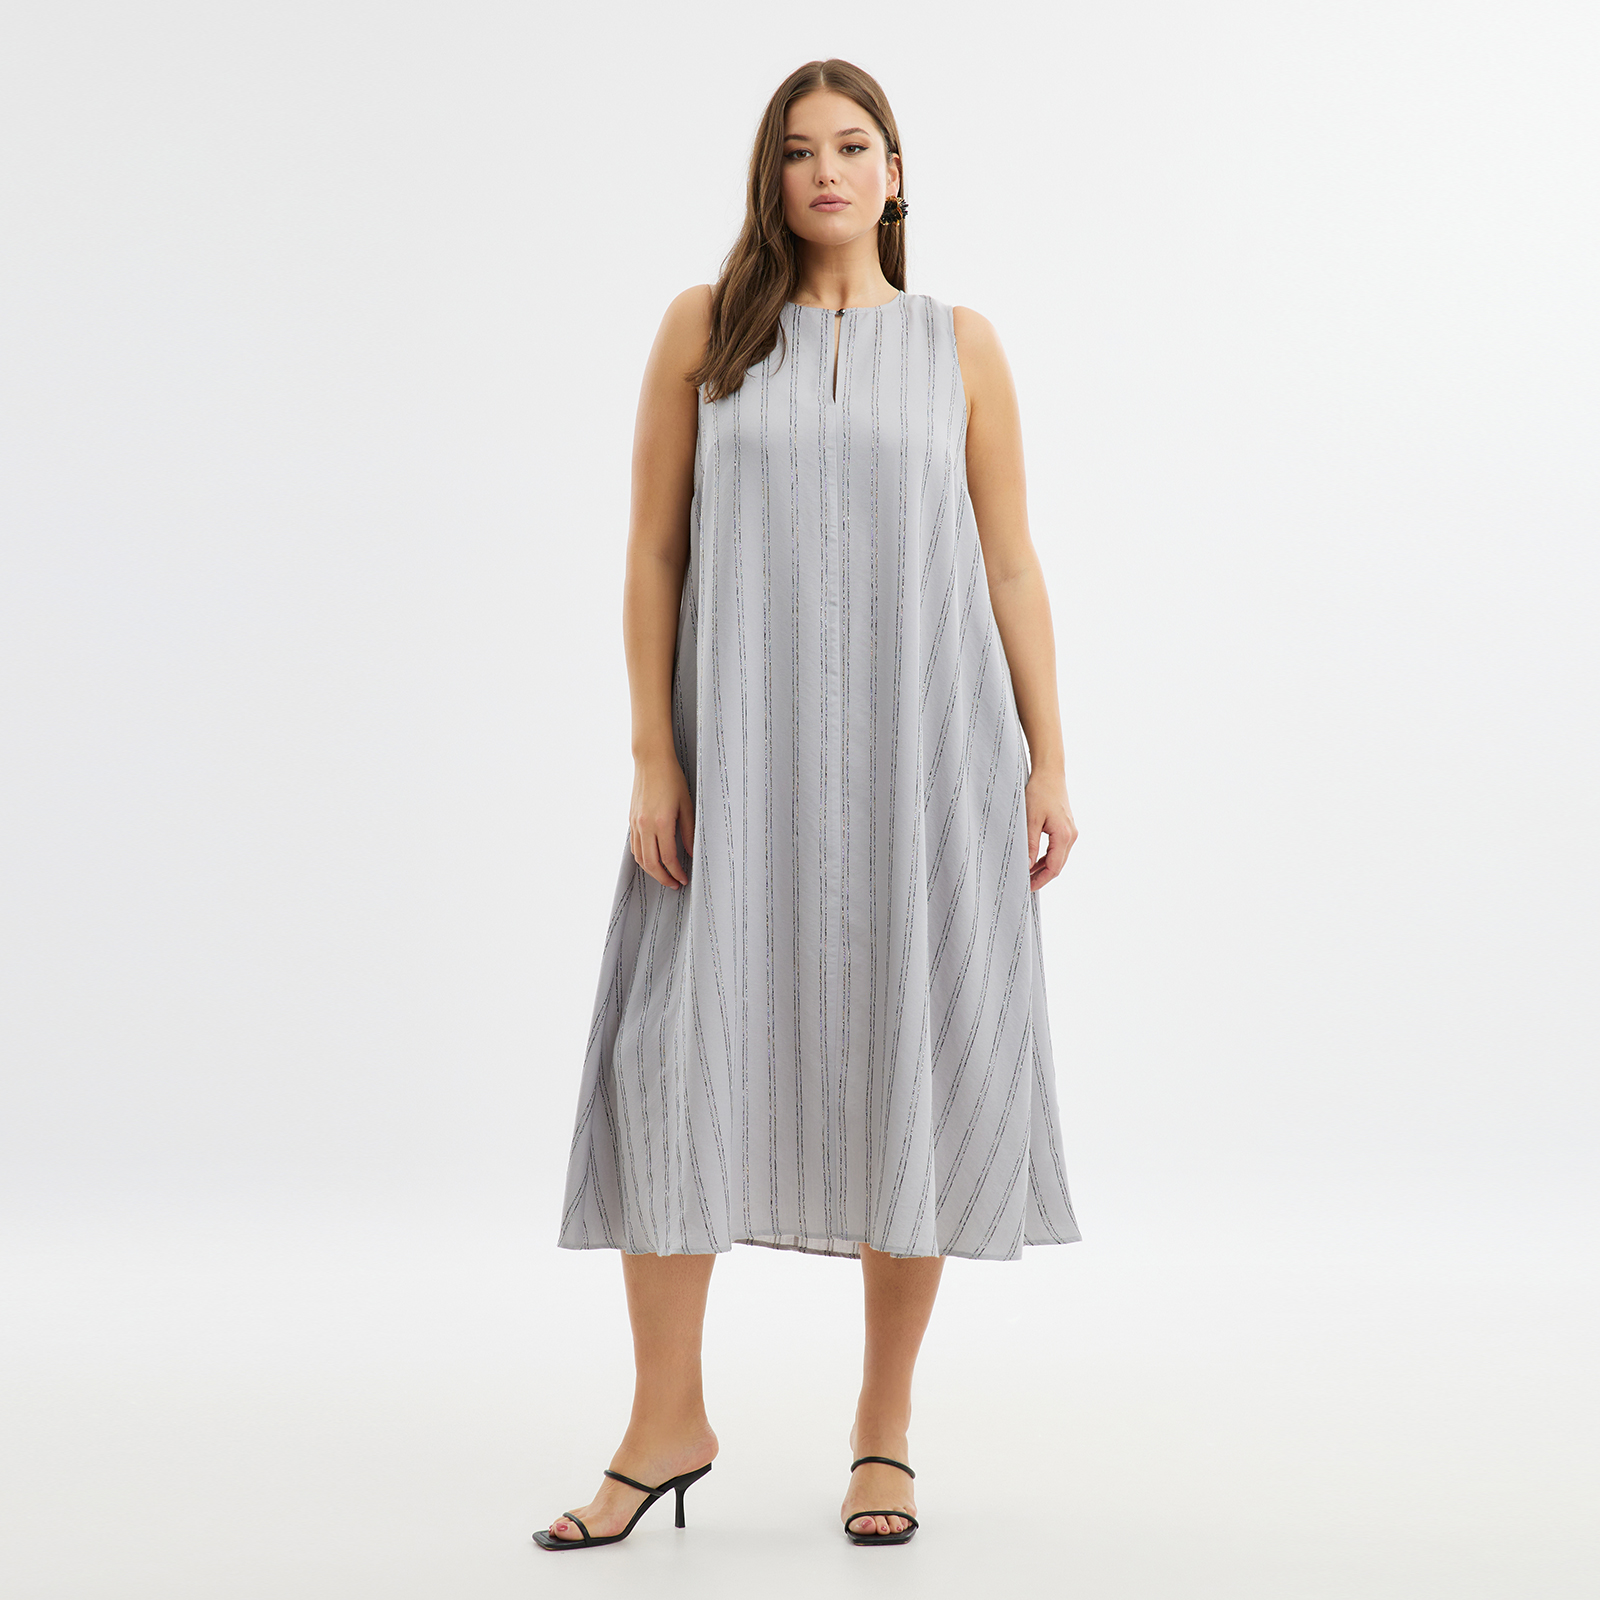 Φόρεμα αμάνικο βισκόζη ριγέ 8101.7213-grey